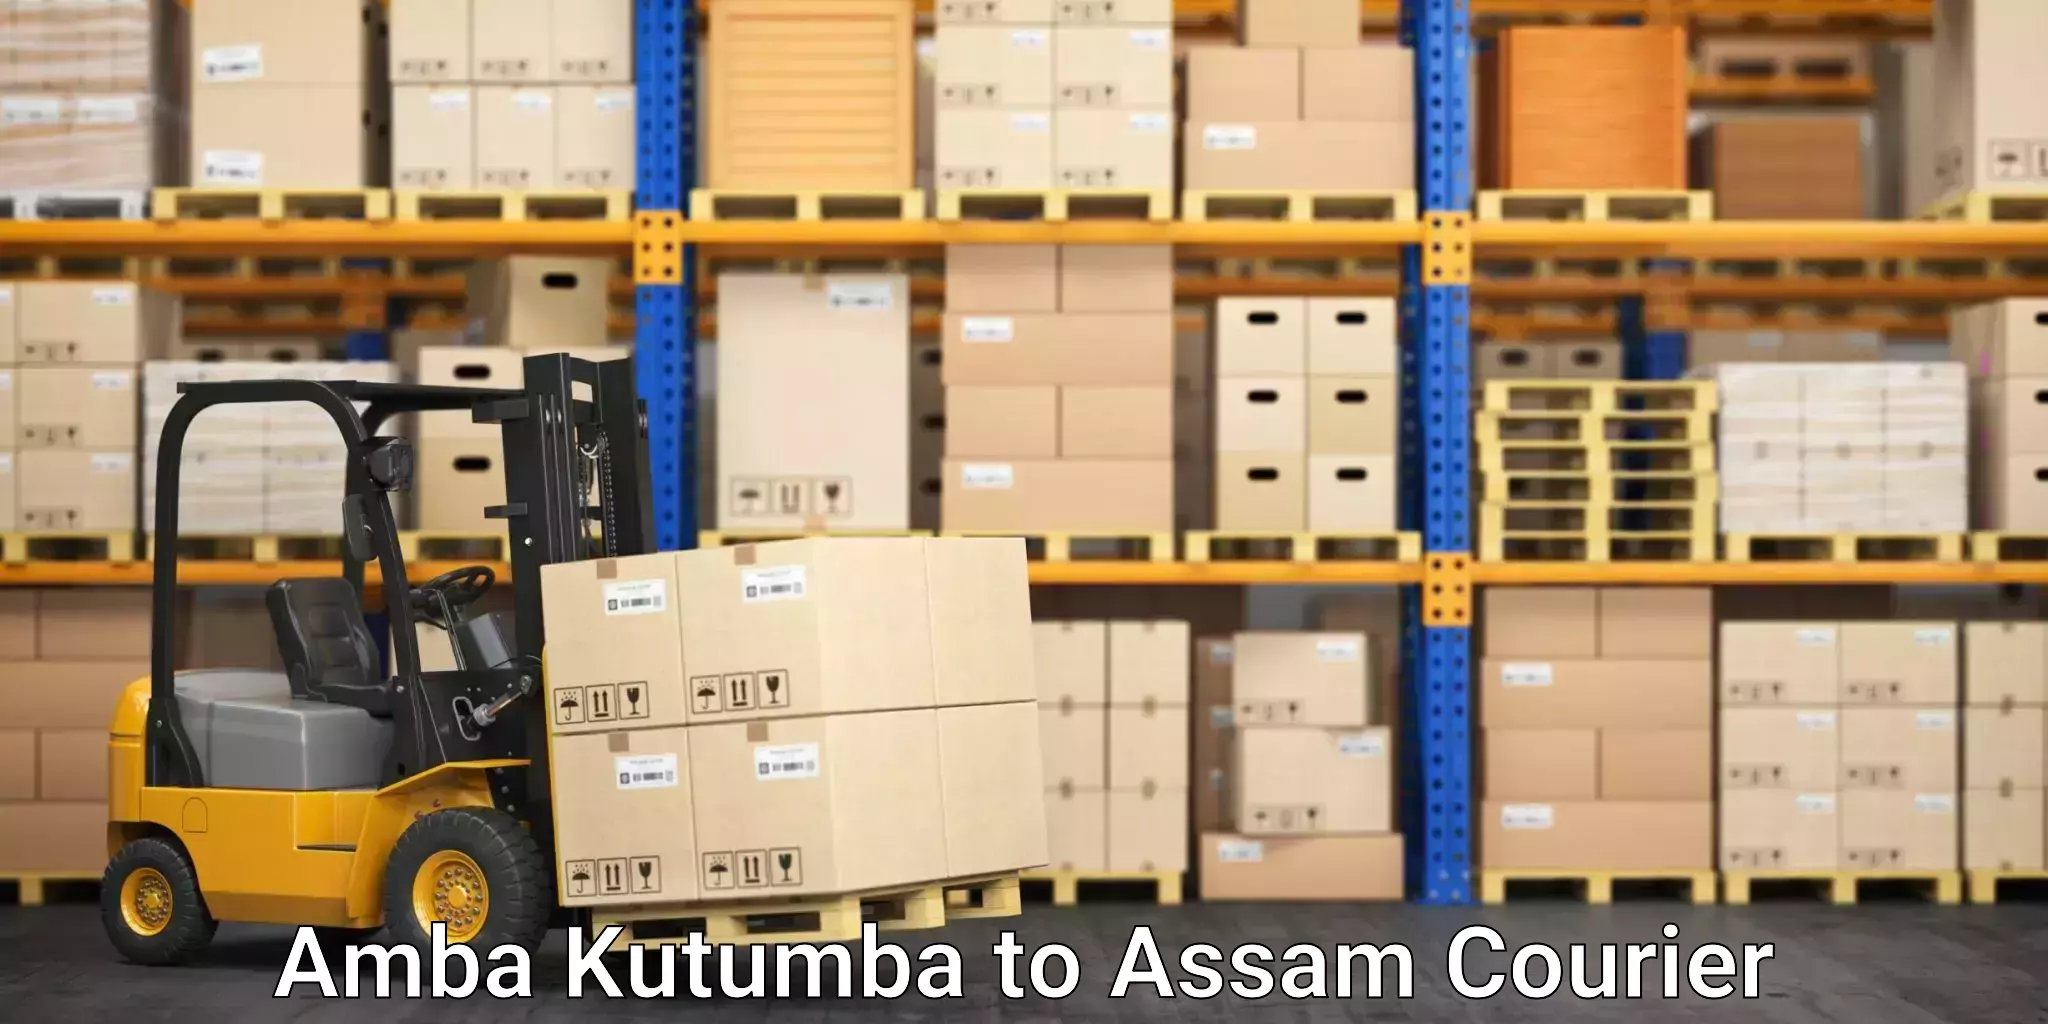 Professional packing and transport Amba Kutumba to Assam